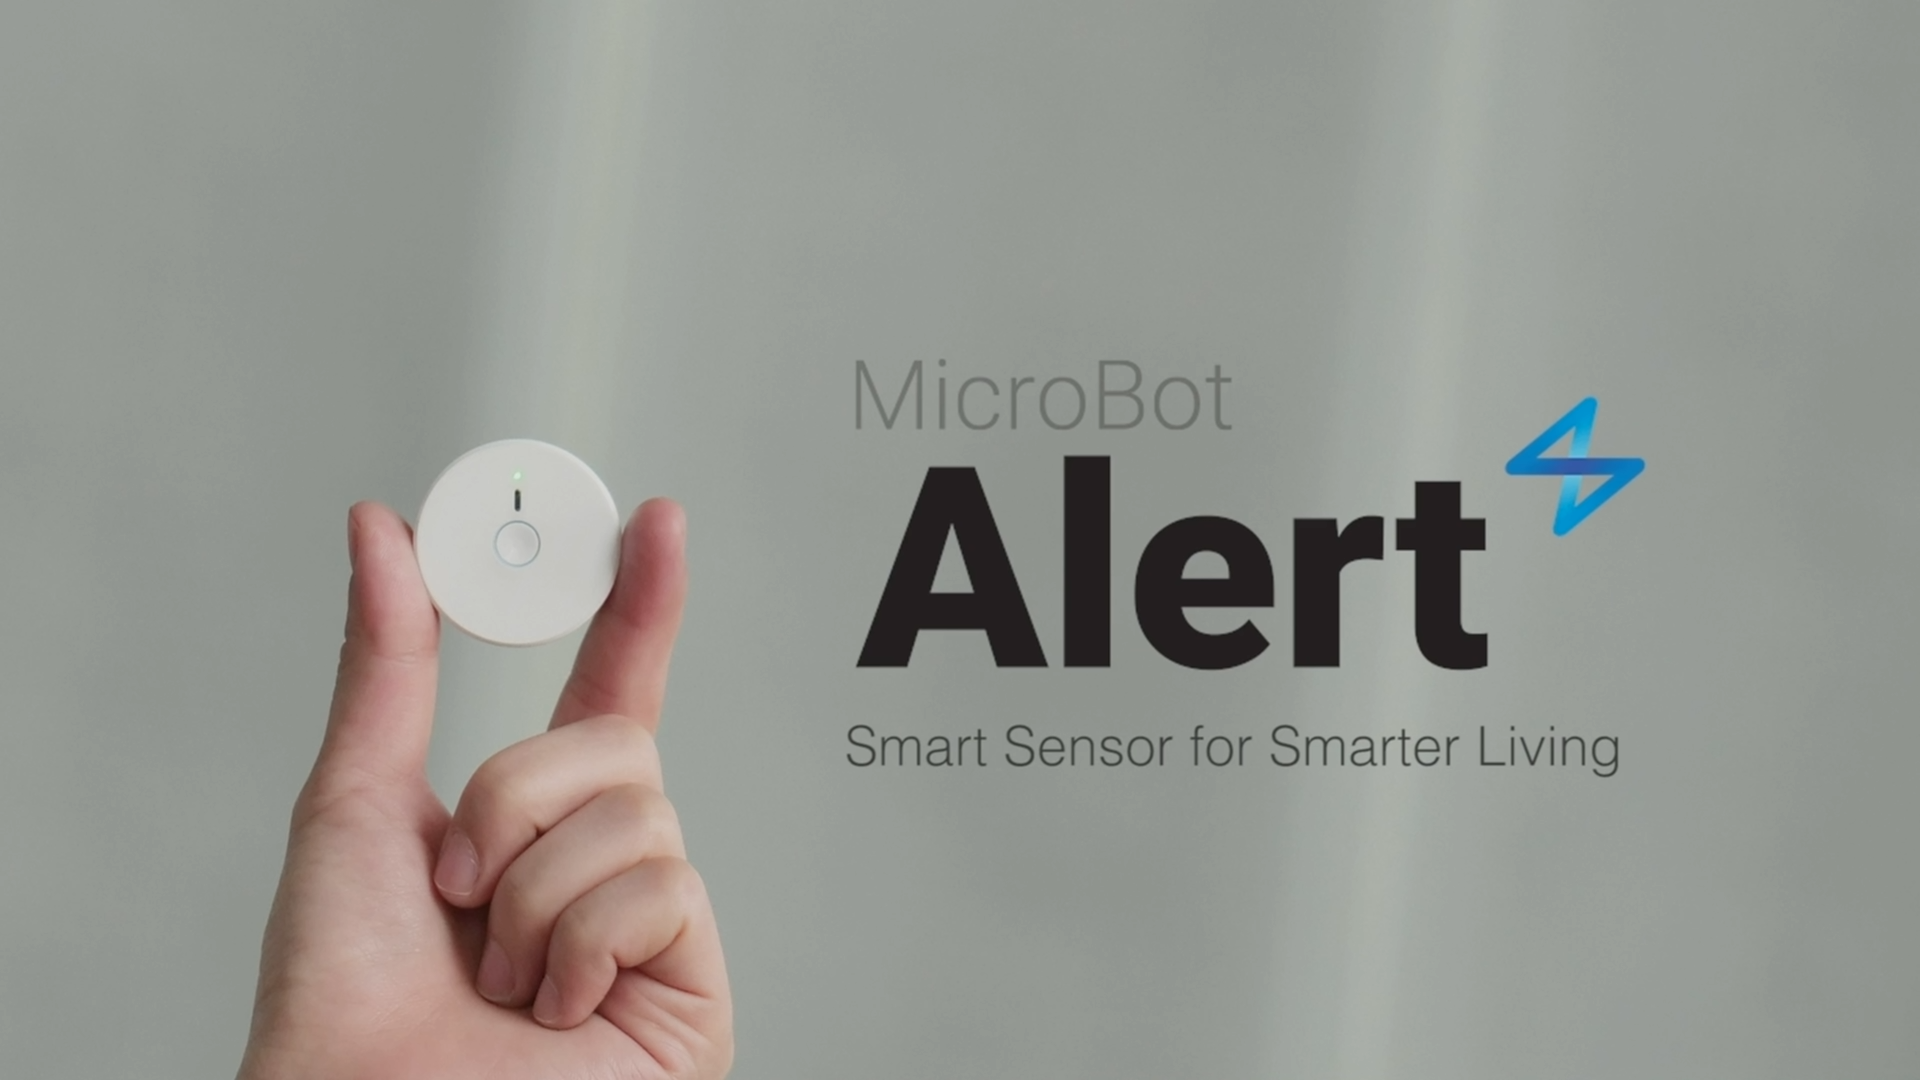 Microbot Alert Smart Sensor